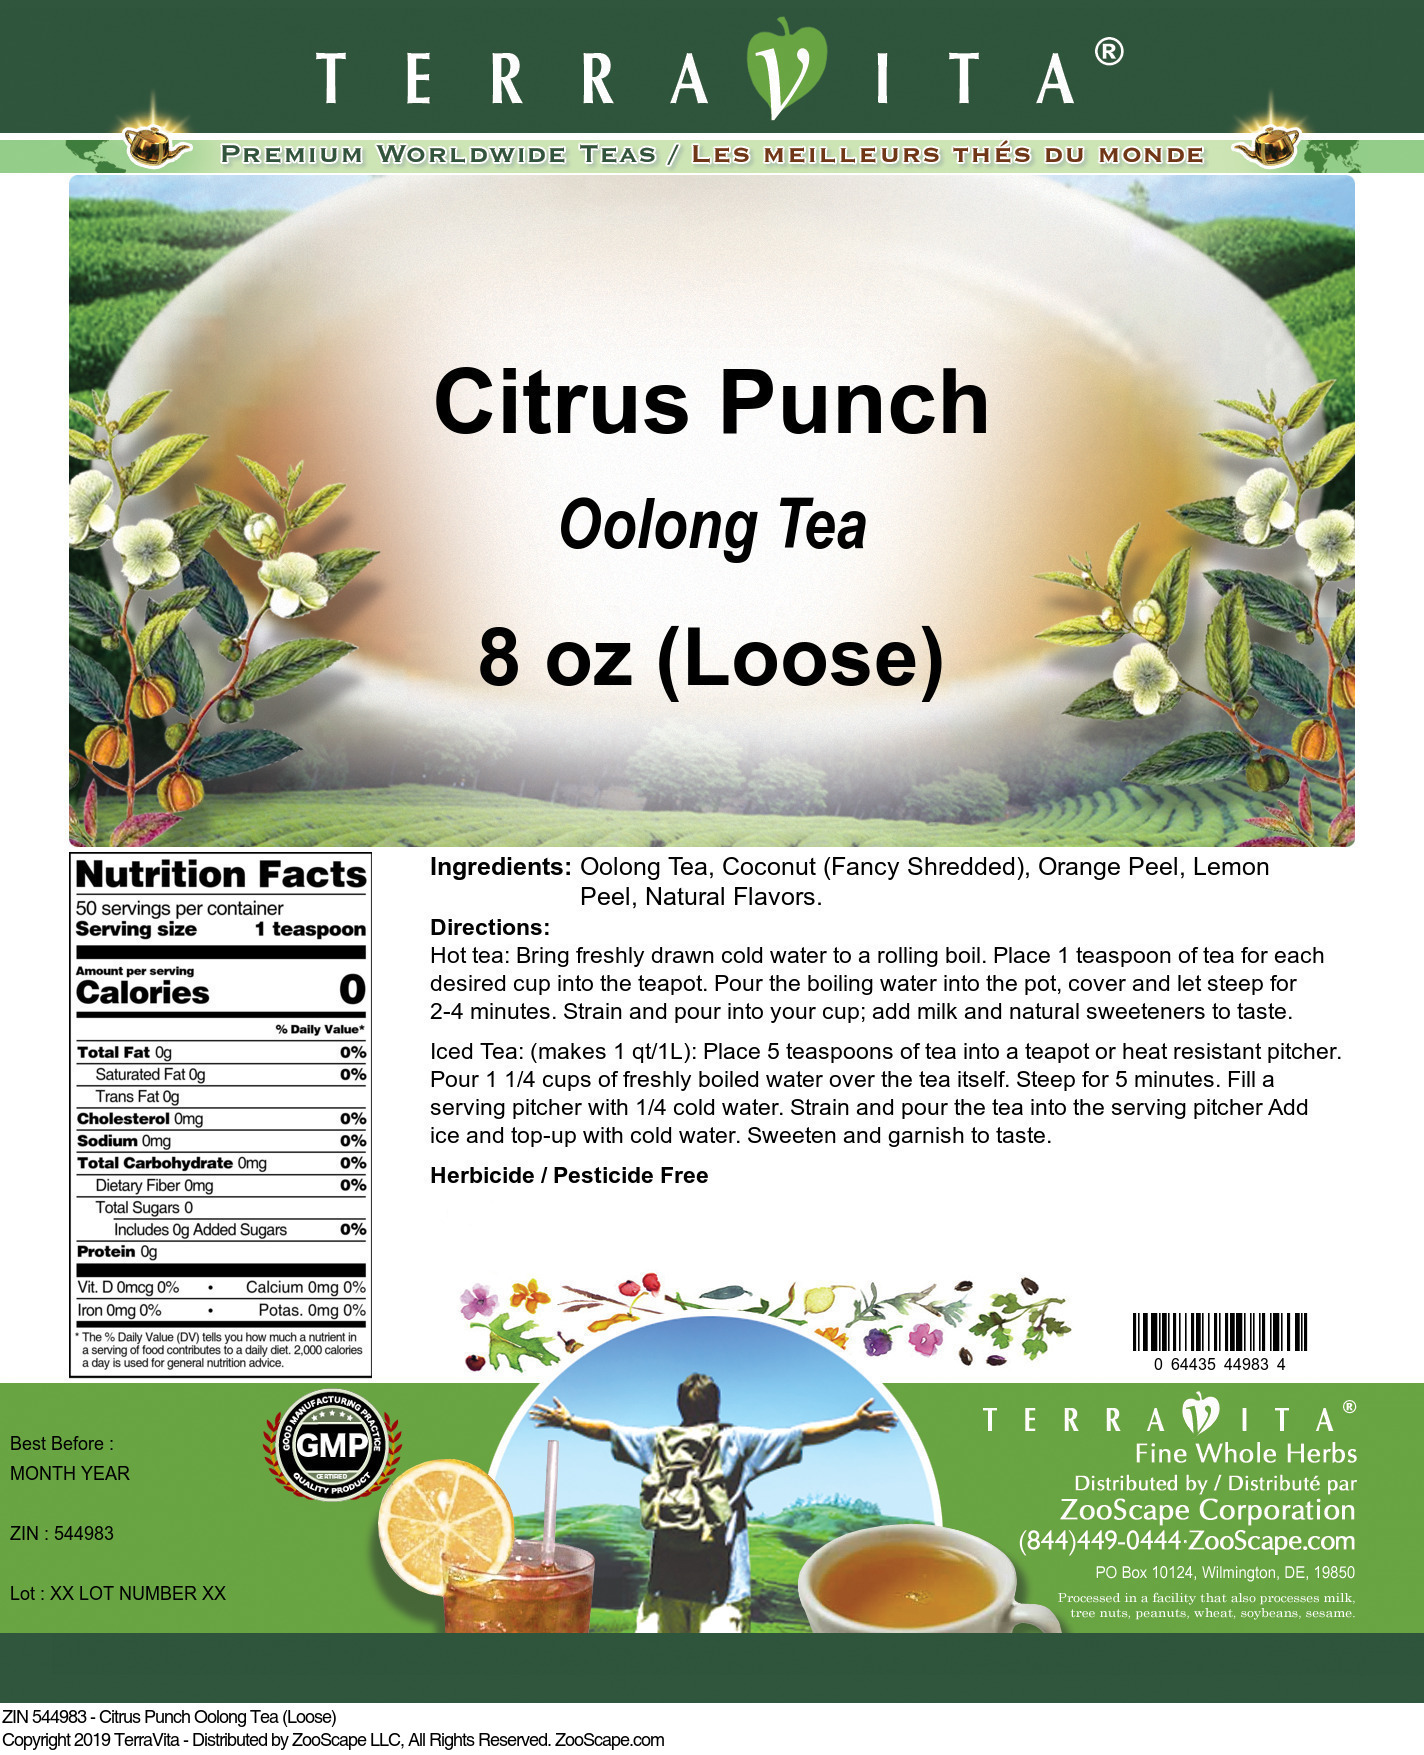 Citrus Punch Oolong Tea (Loose) - Label